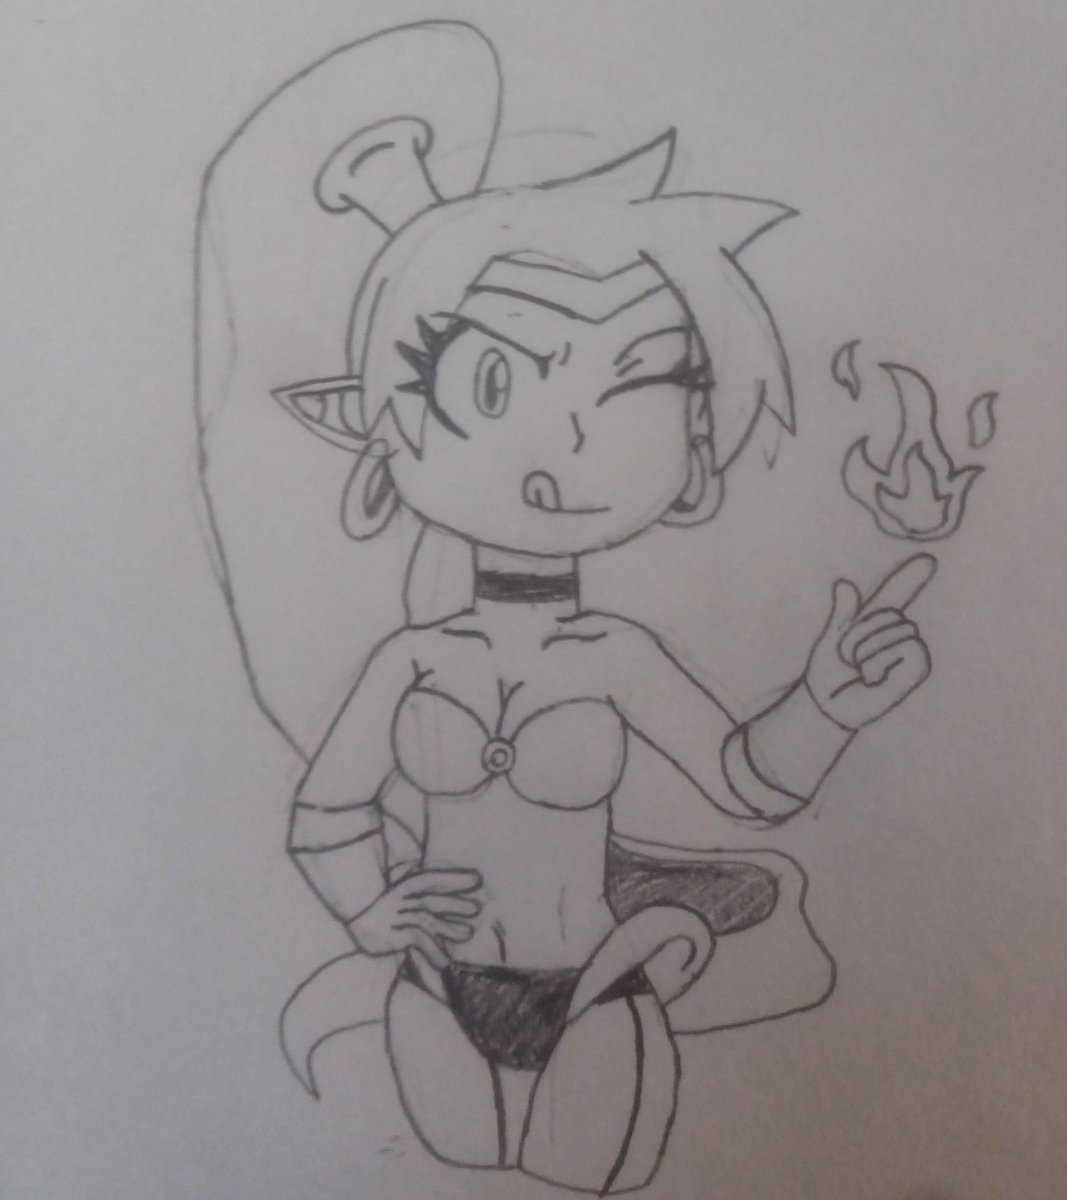 Shantae is pretty cool.